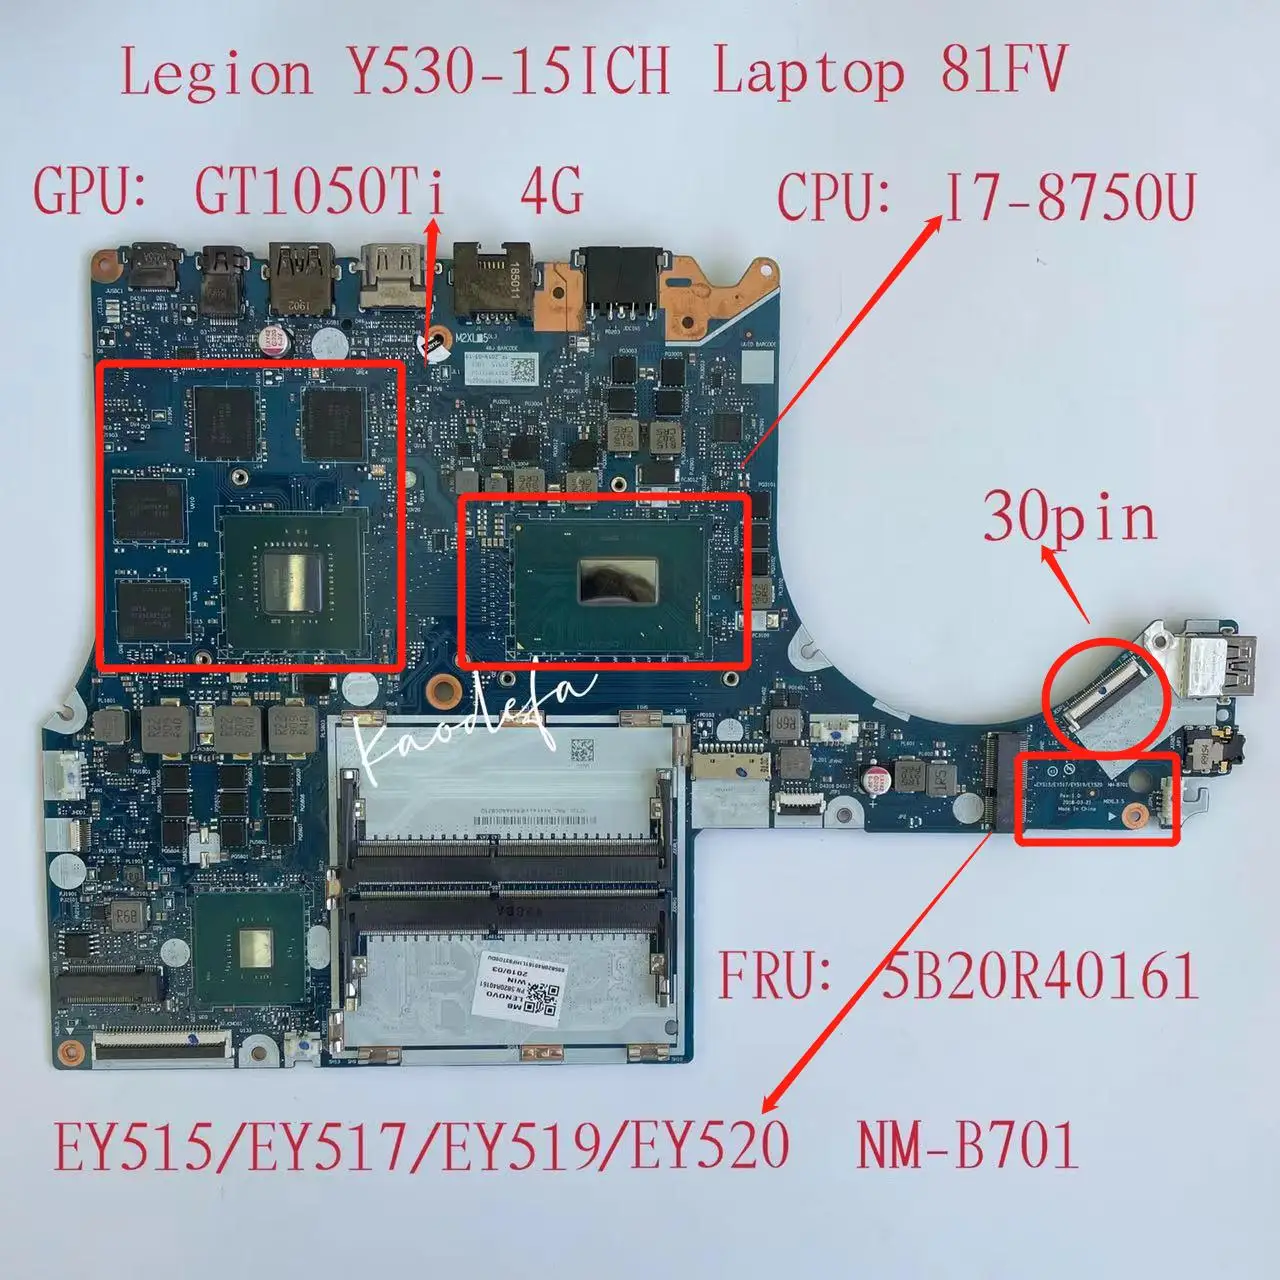 

NM-B701 for Lenovo Legion Y530-15ICH Laptop Motherboard CPU:I7-8750GPU: N17P-G1-A1 GT1050TI 4G FRU:5B20R40161